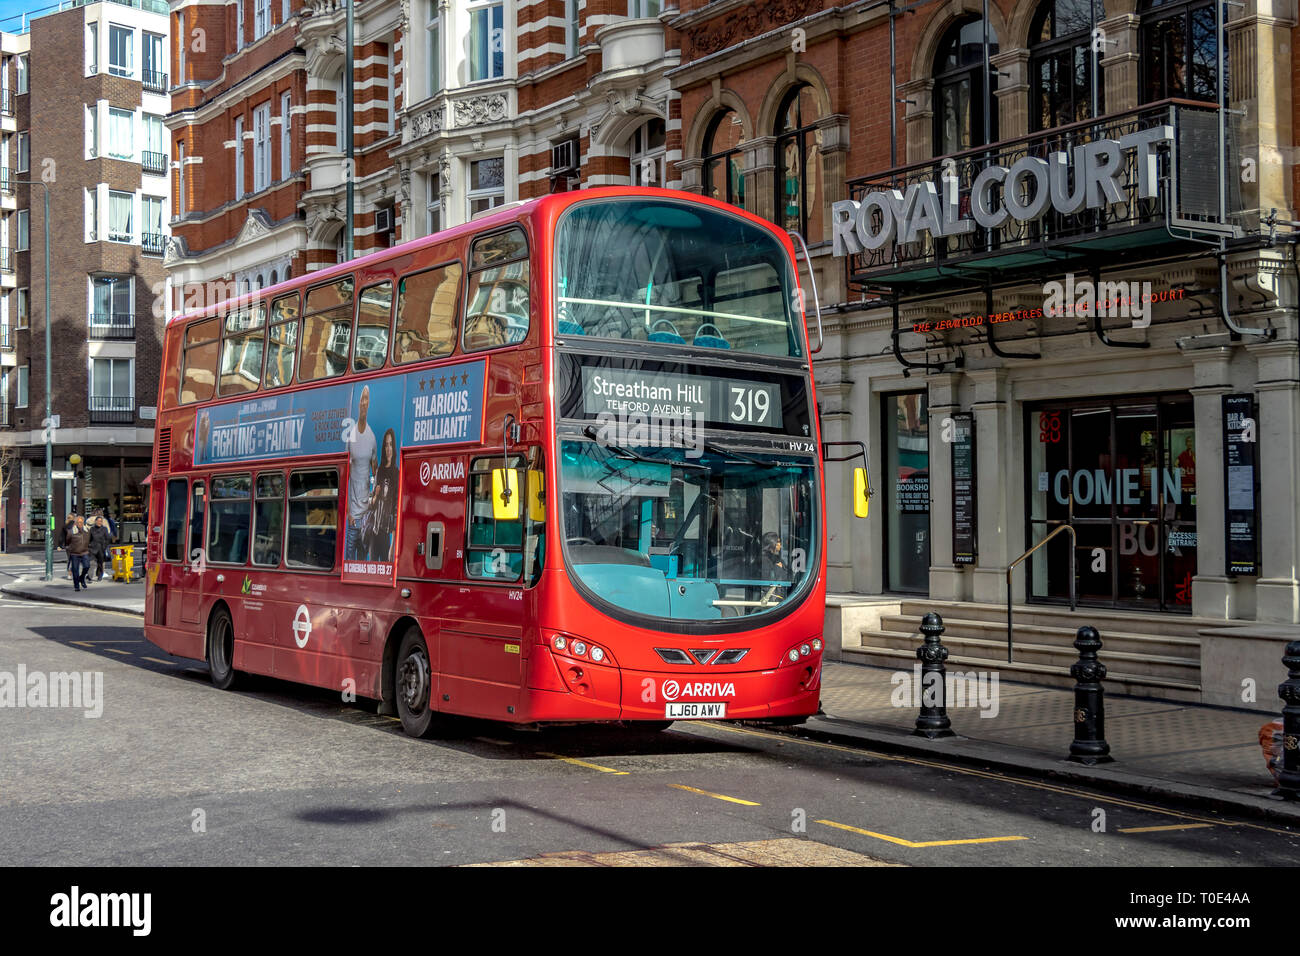 Un bus à impériale rouge de Londres de 319 devant le Royal court Theatre à Sloane Square, avant de commencer son voyage à Streatham Hill, Londres, Royaume-Uni Banque D'Images